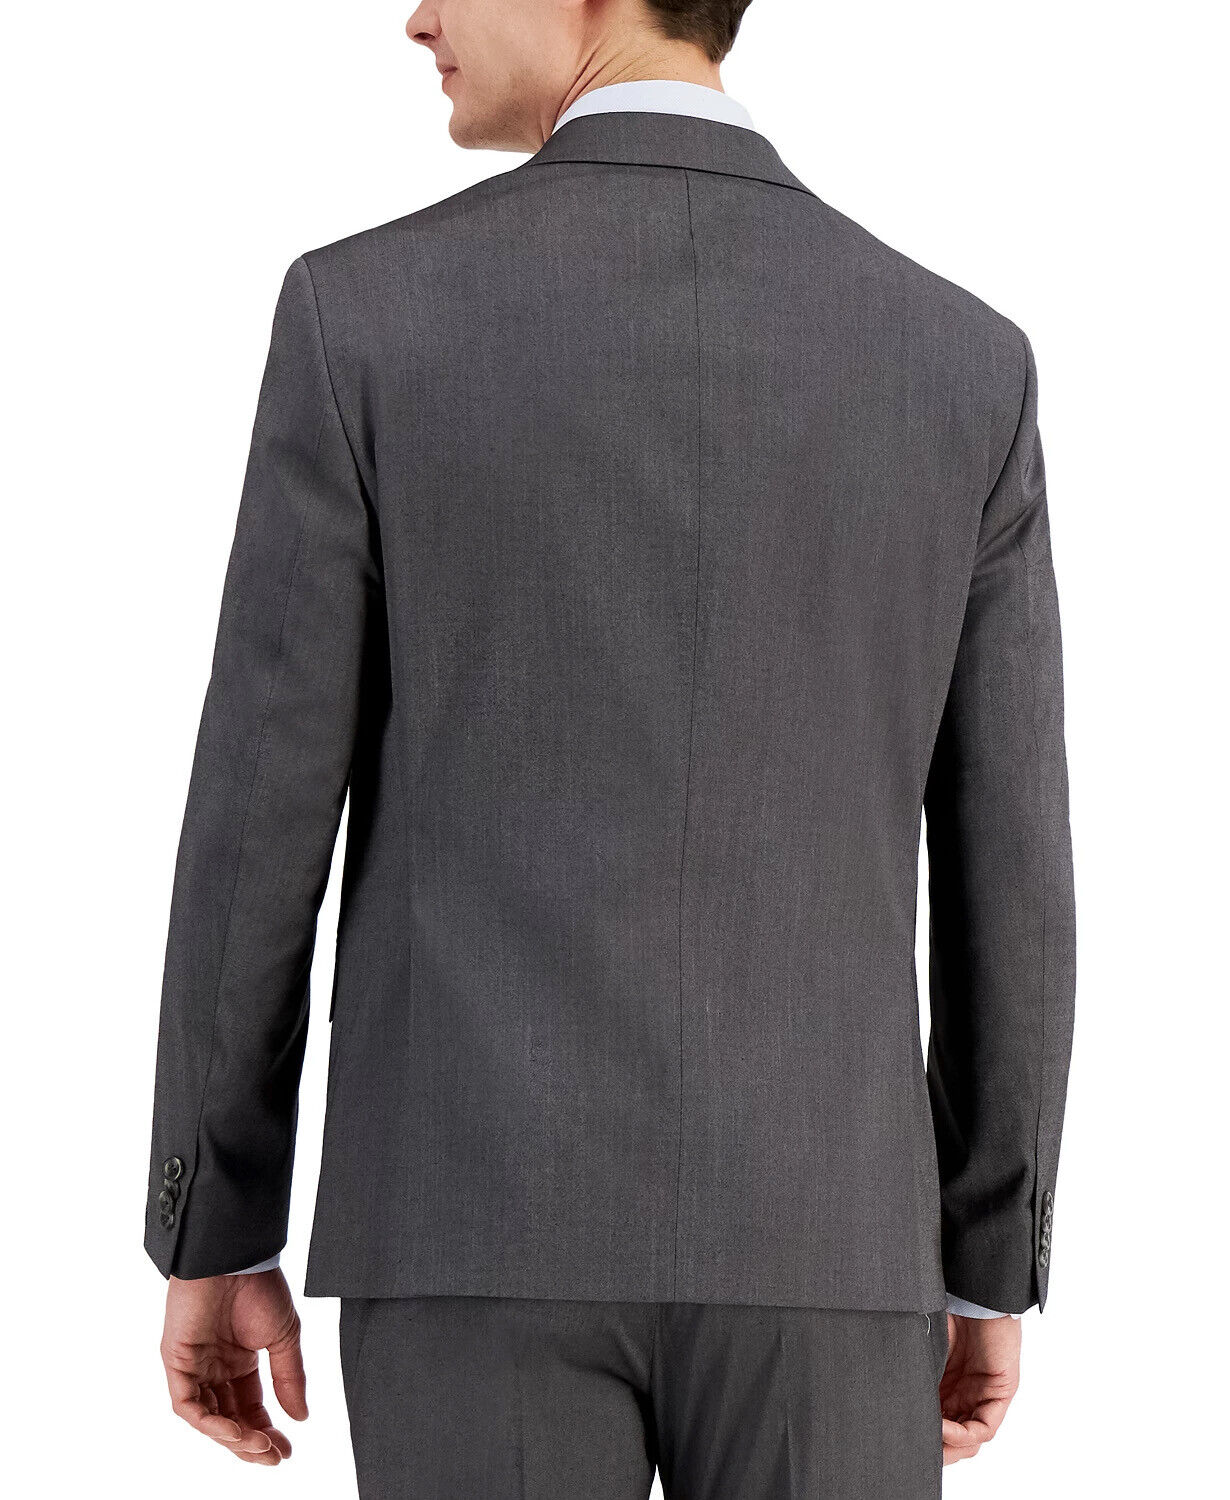 Kenneth Cole Reaction Techni-Cole Gray Suit Slim Fit Jacket 44L 2 Button